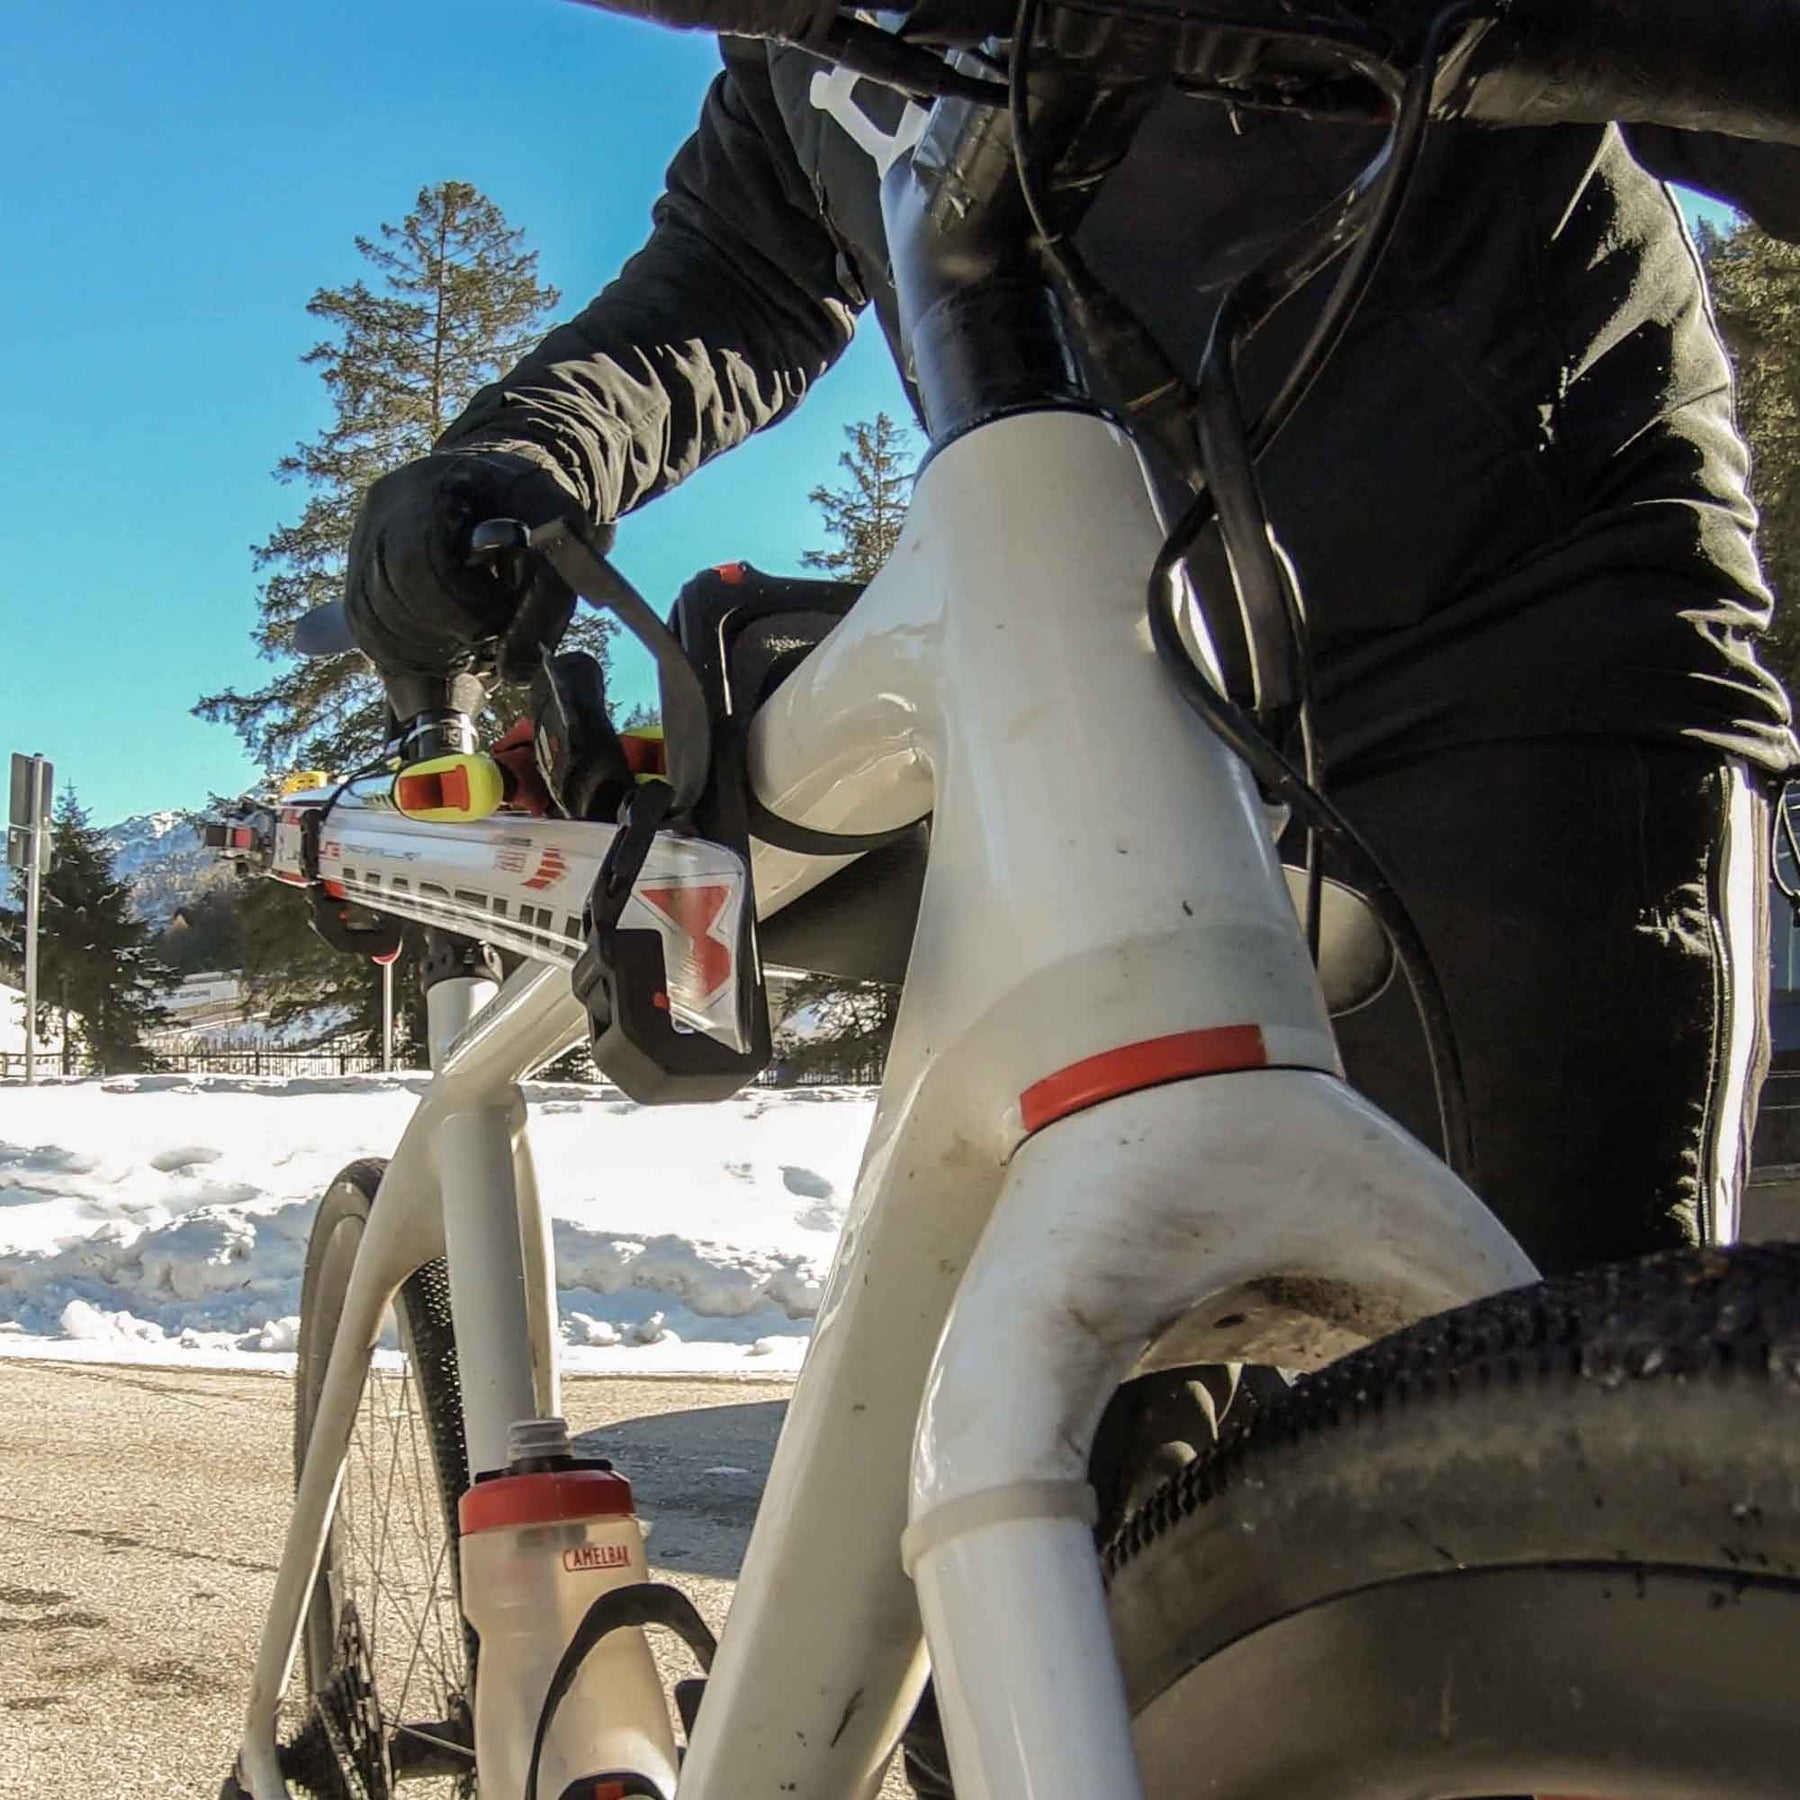 Bike & Ski: Cyclite mit Ski- und Splitboard-Fixierung für